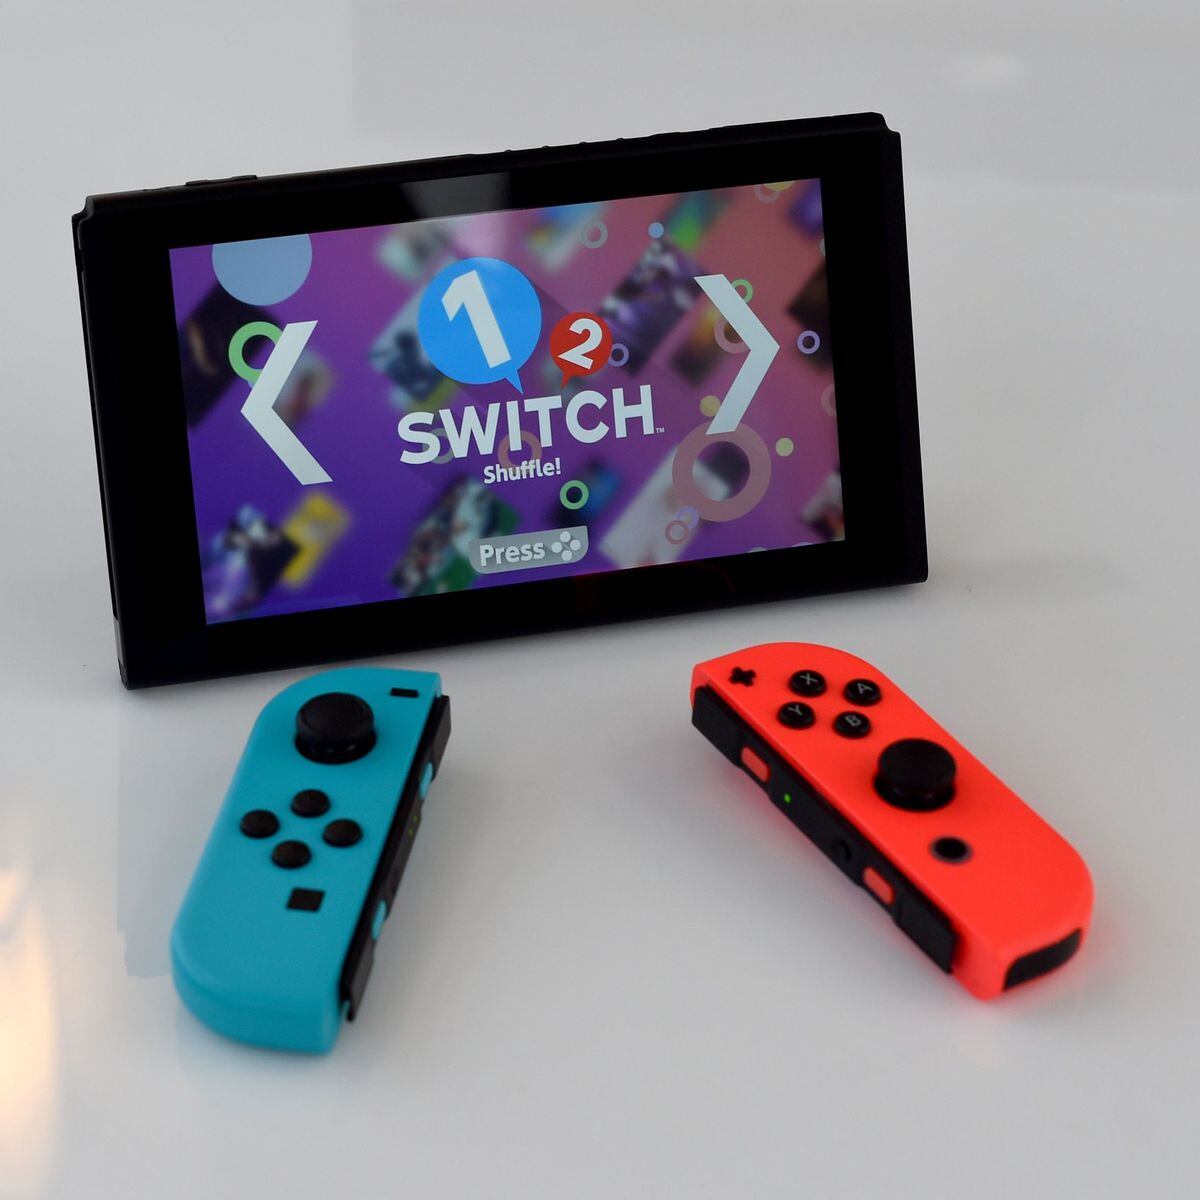 Paint Ball, Aplicações de download da Nintendo Switch, Jogos